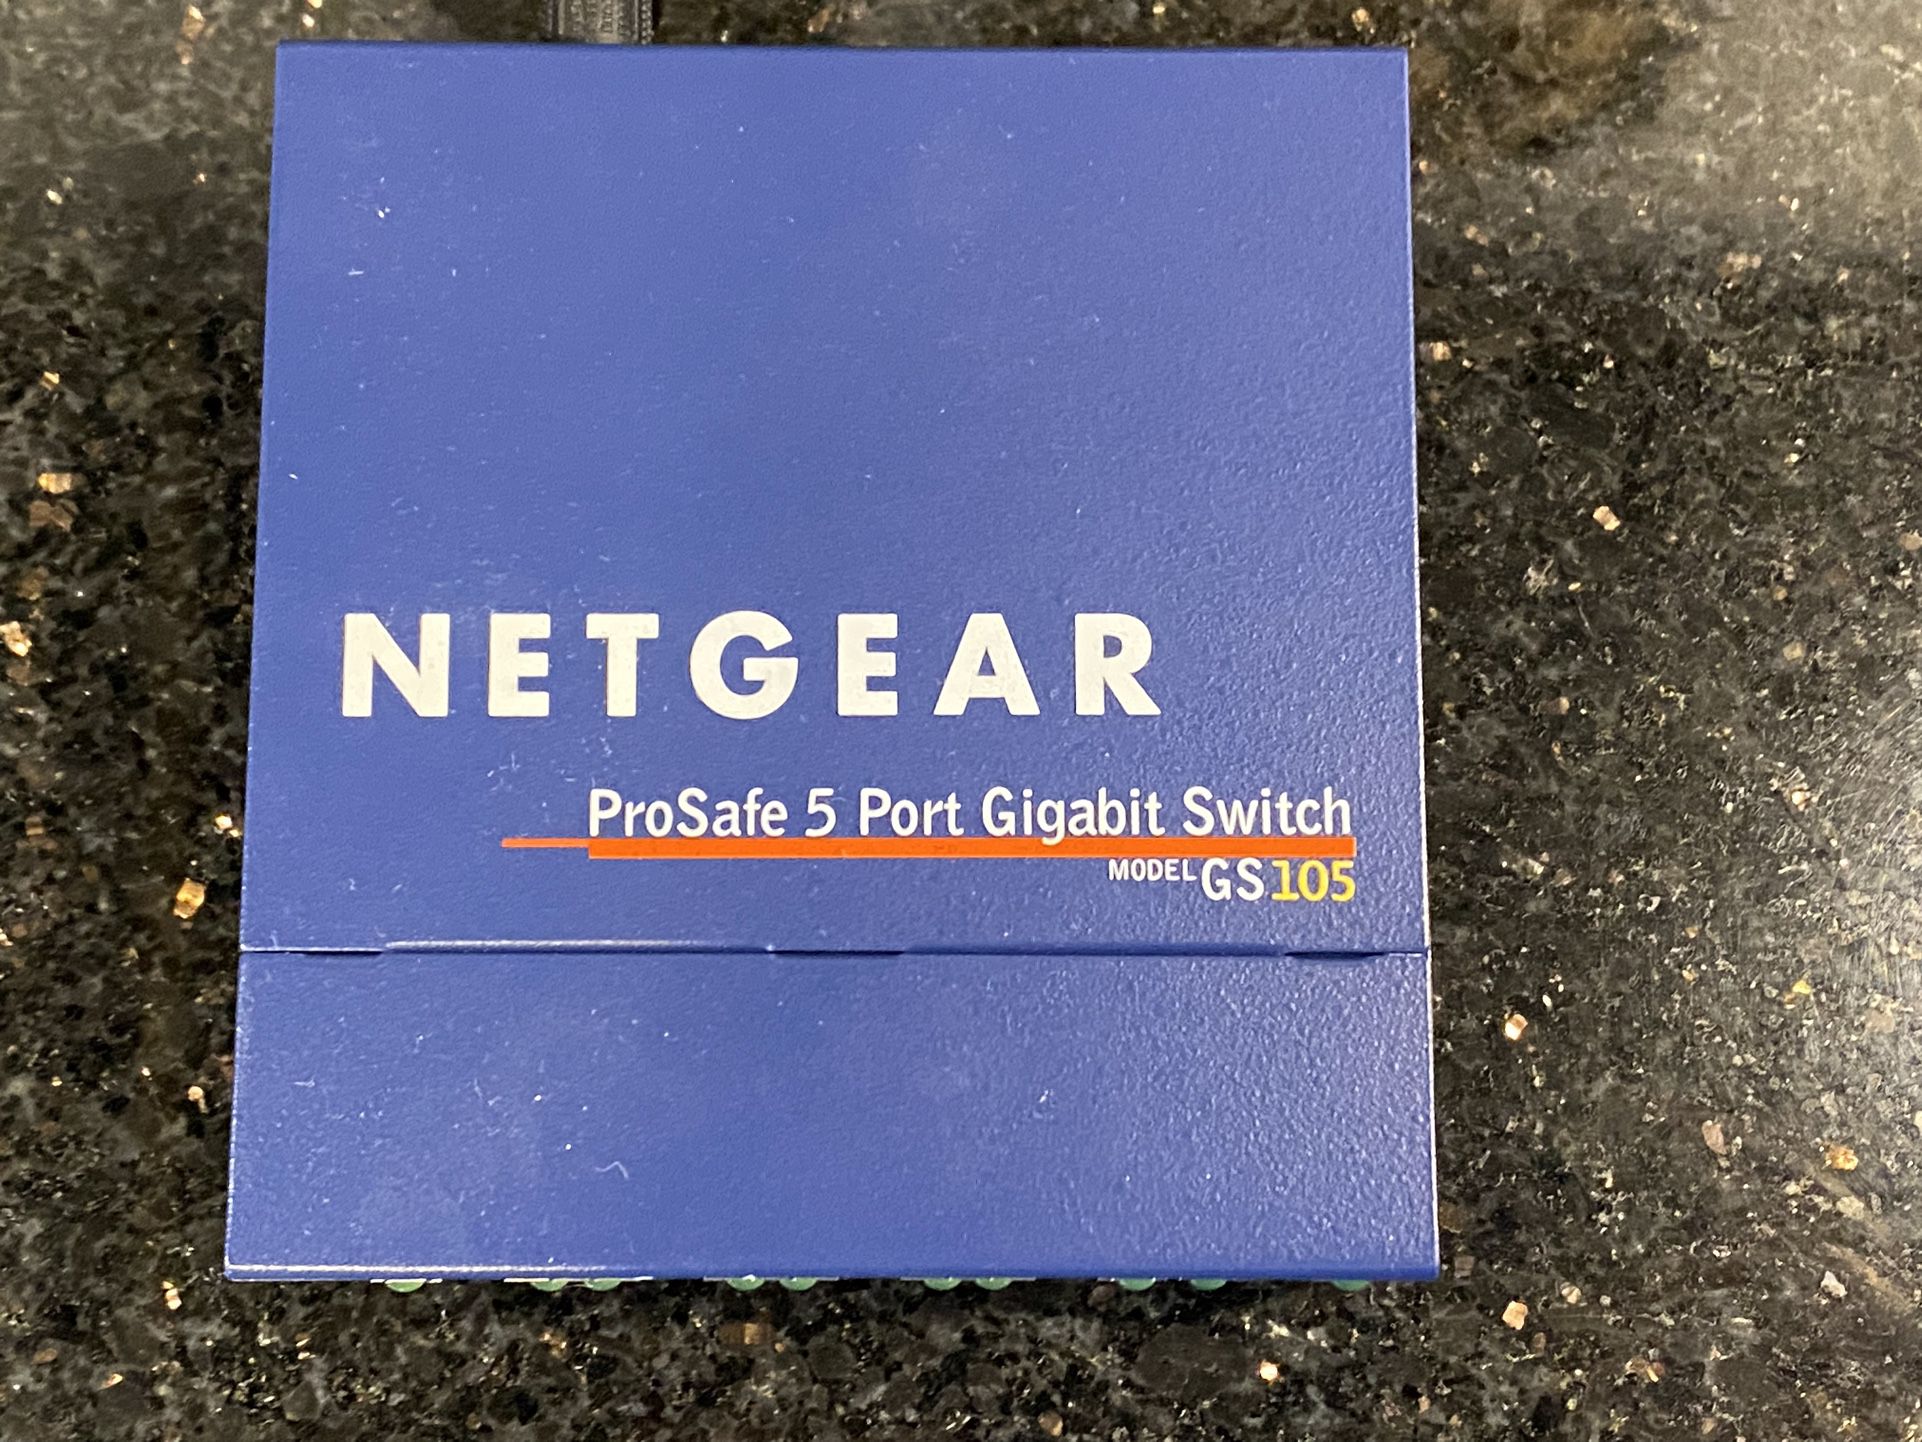 NetGear ProSafe 5-Port Gigabit Desktop Switch GS105